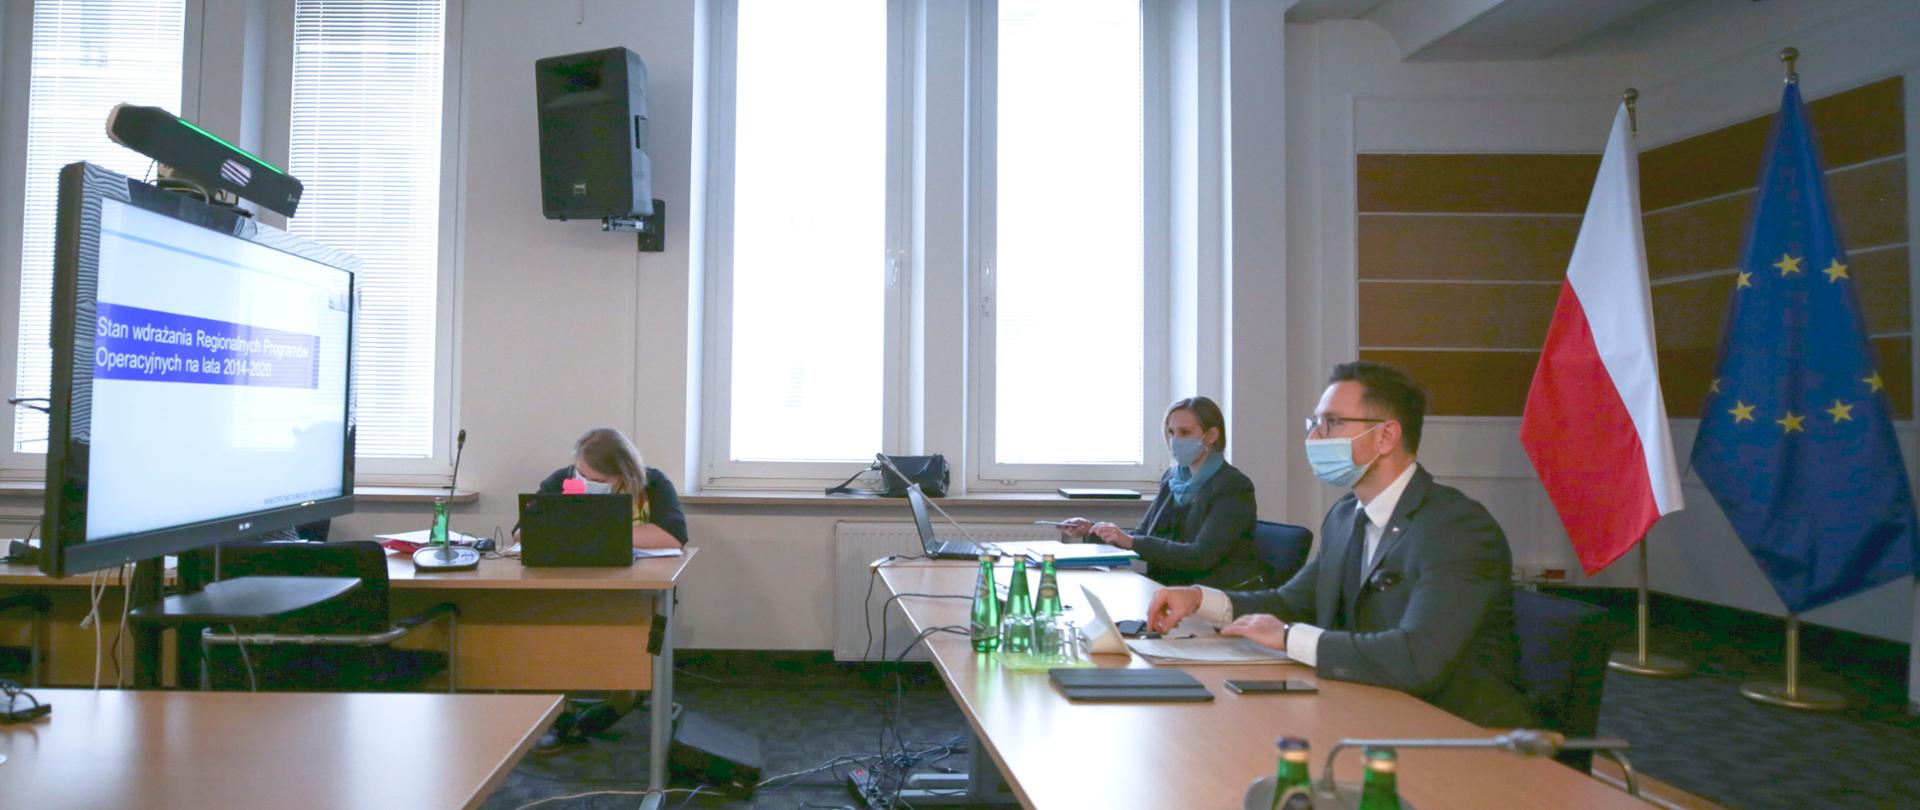 W sali konferencyjnej przy stołach siedzą trzy osoby. Pierwszy z prawej - wiceminister Waldemar Buda patrzy na duży monitor. Za nim dwie flagi polska i unijna.